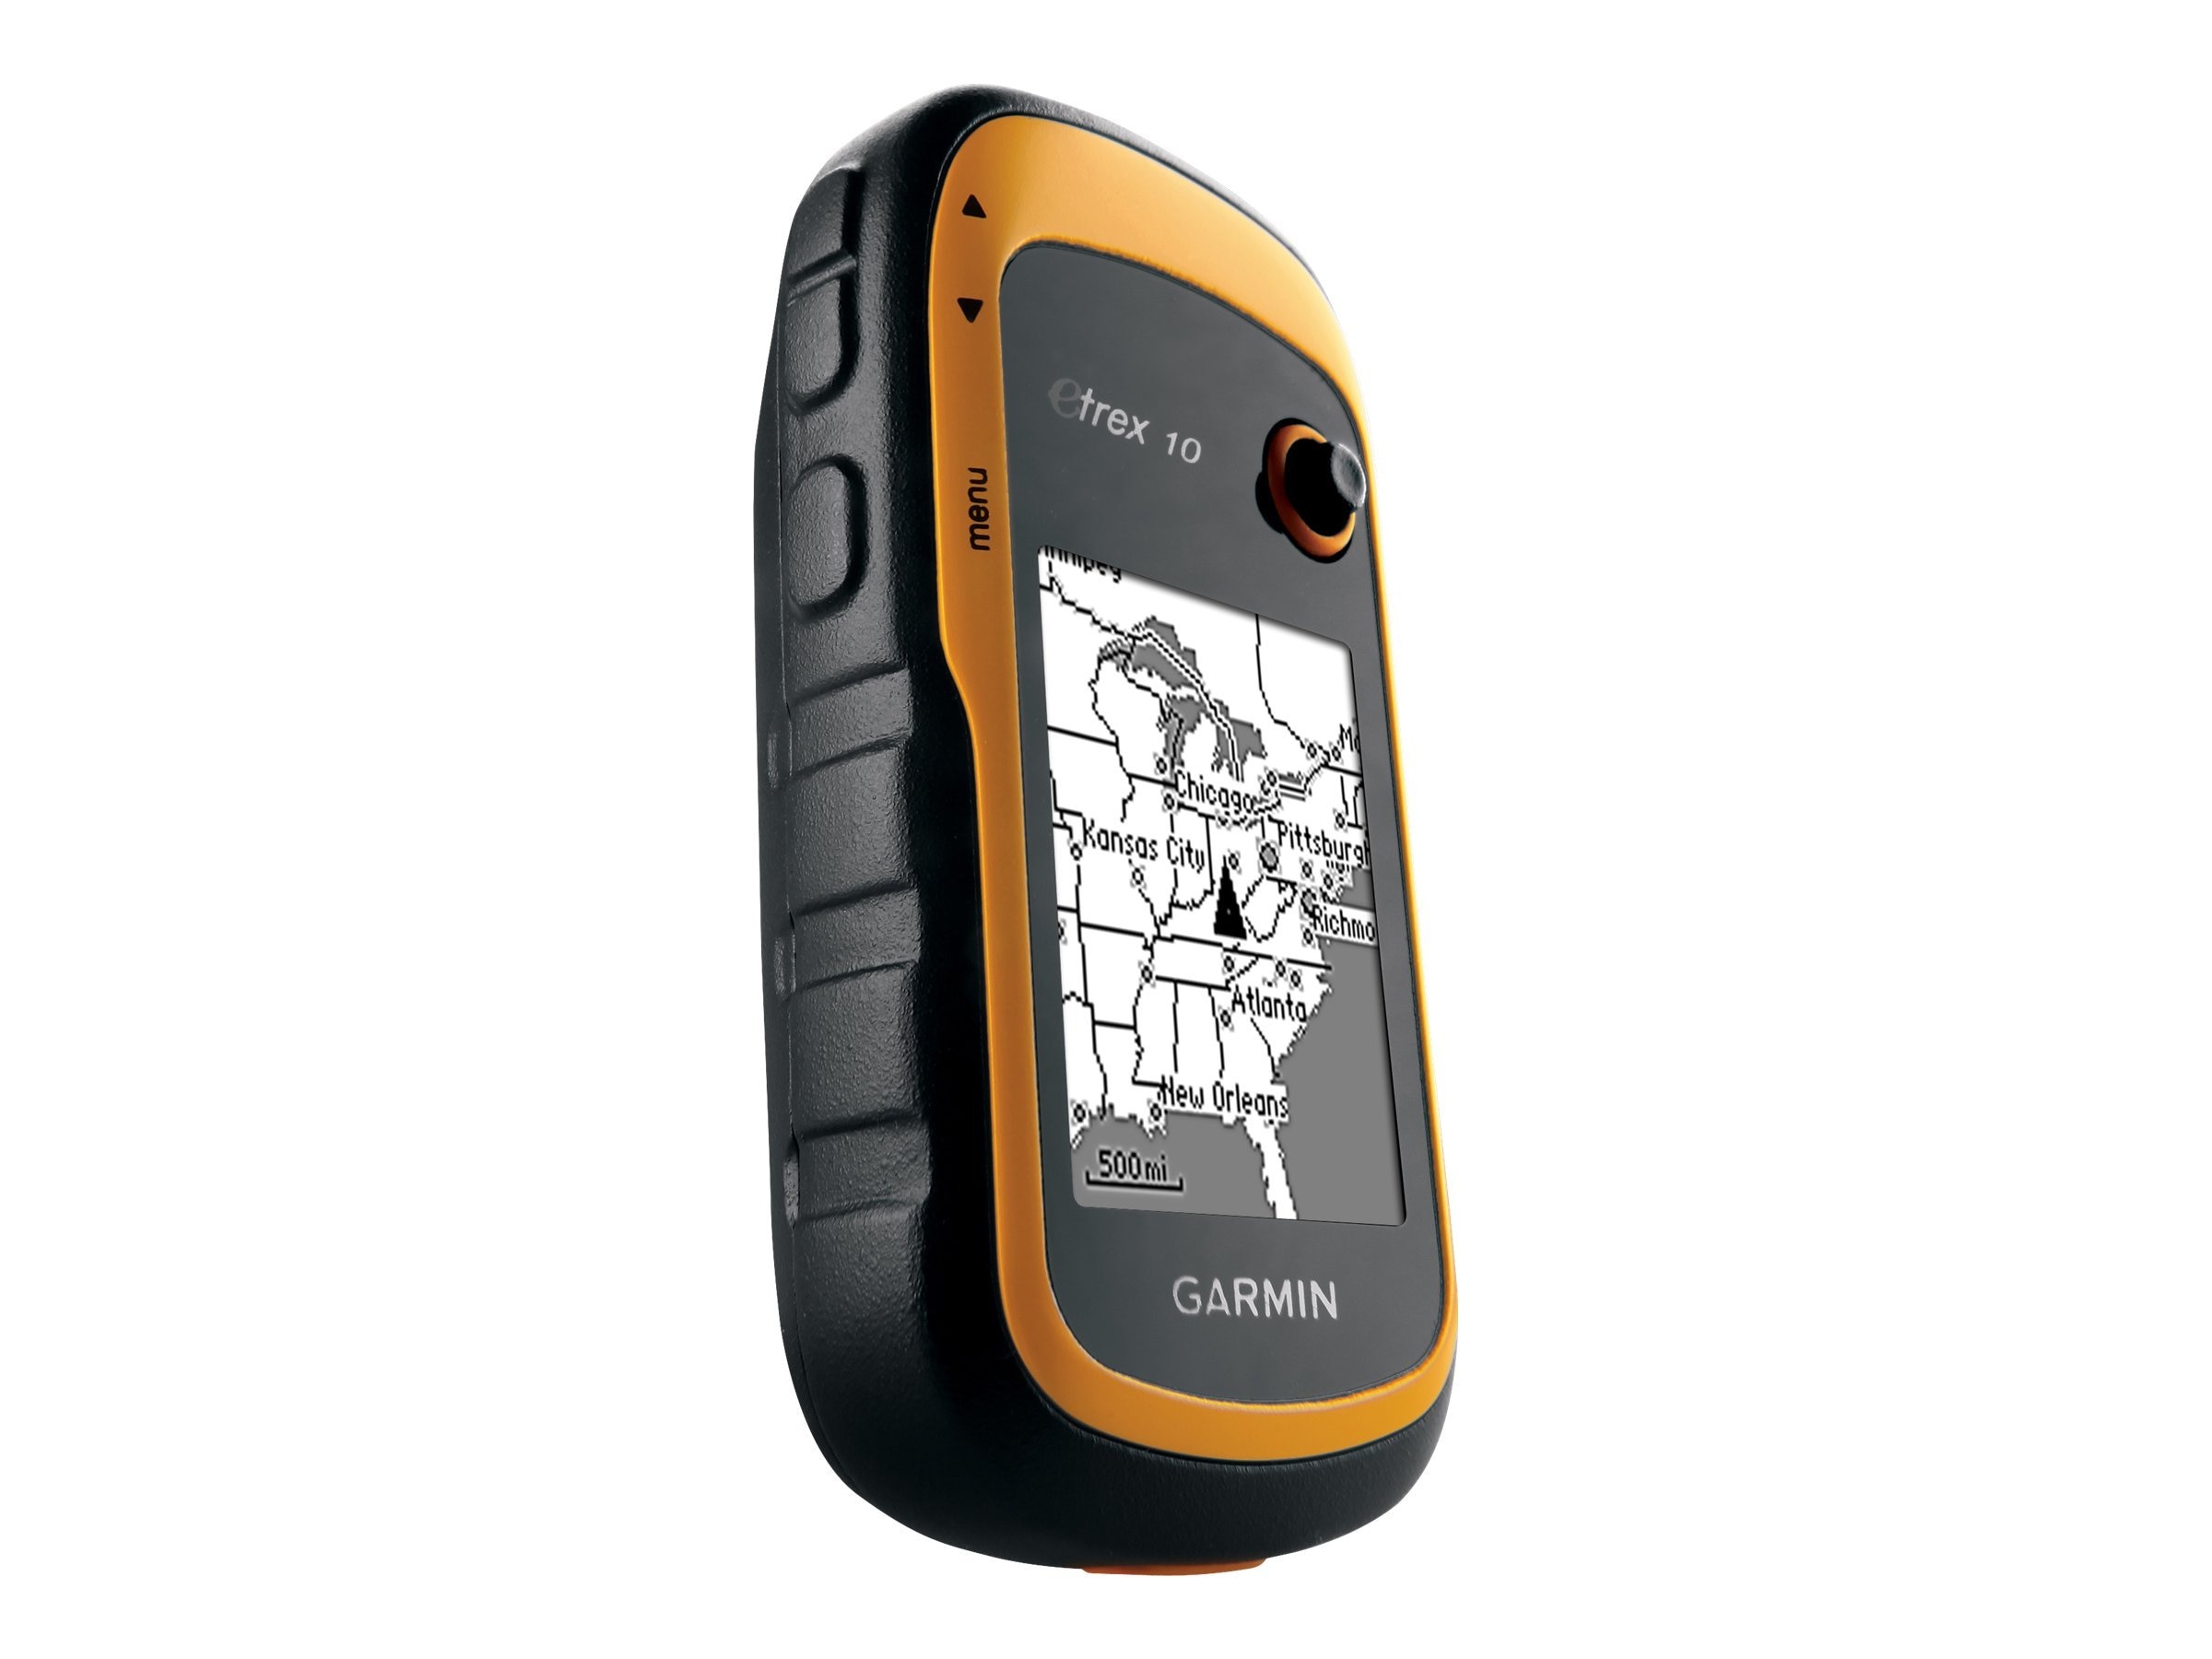 Garmin eTrex GPS Handheld, Yellow (010-00970-00)